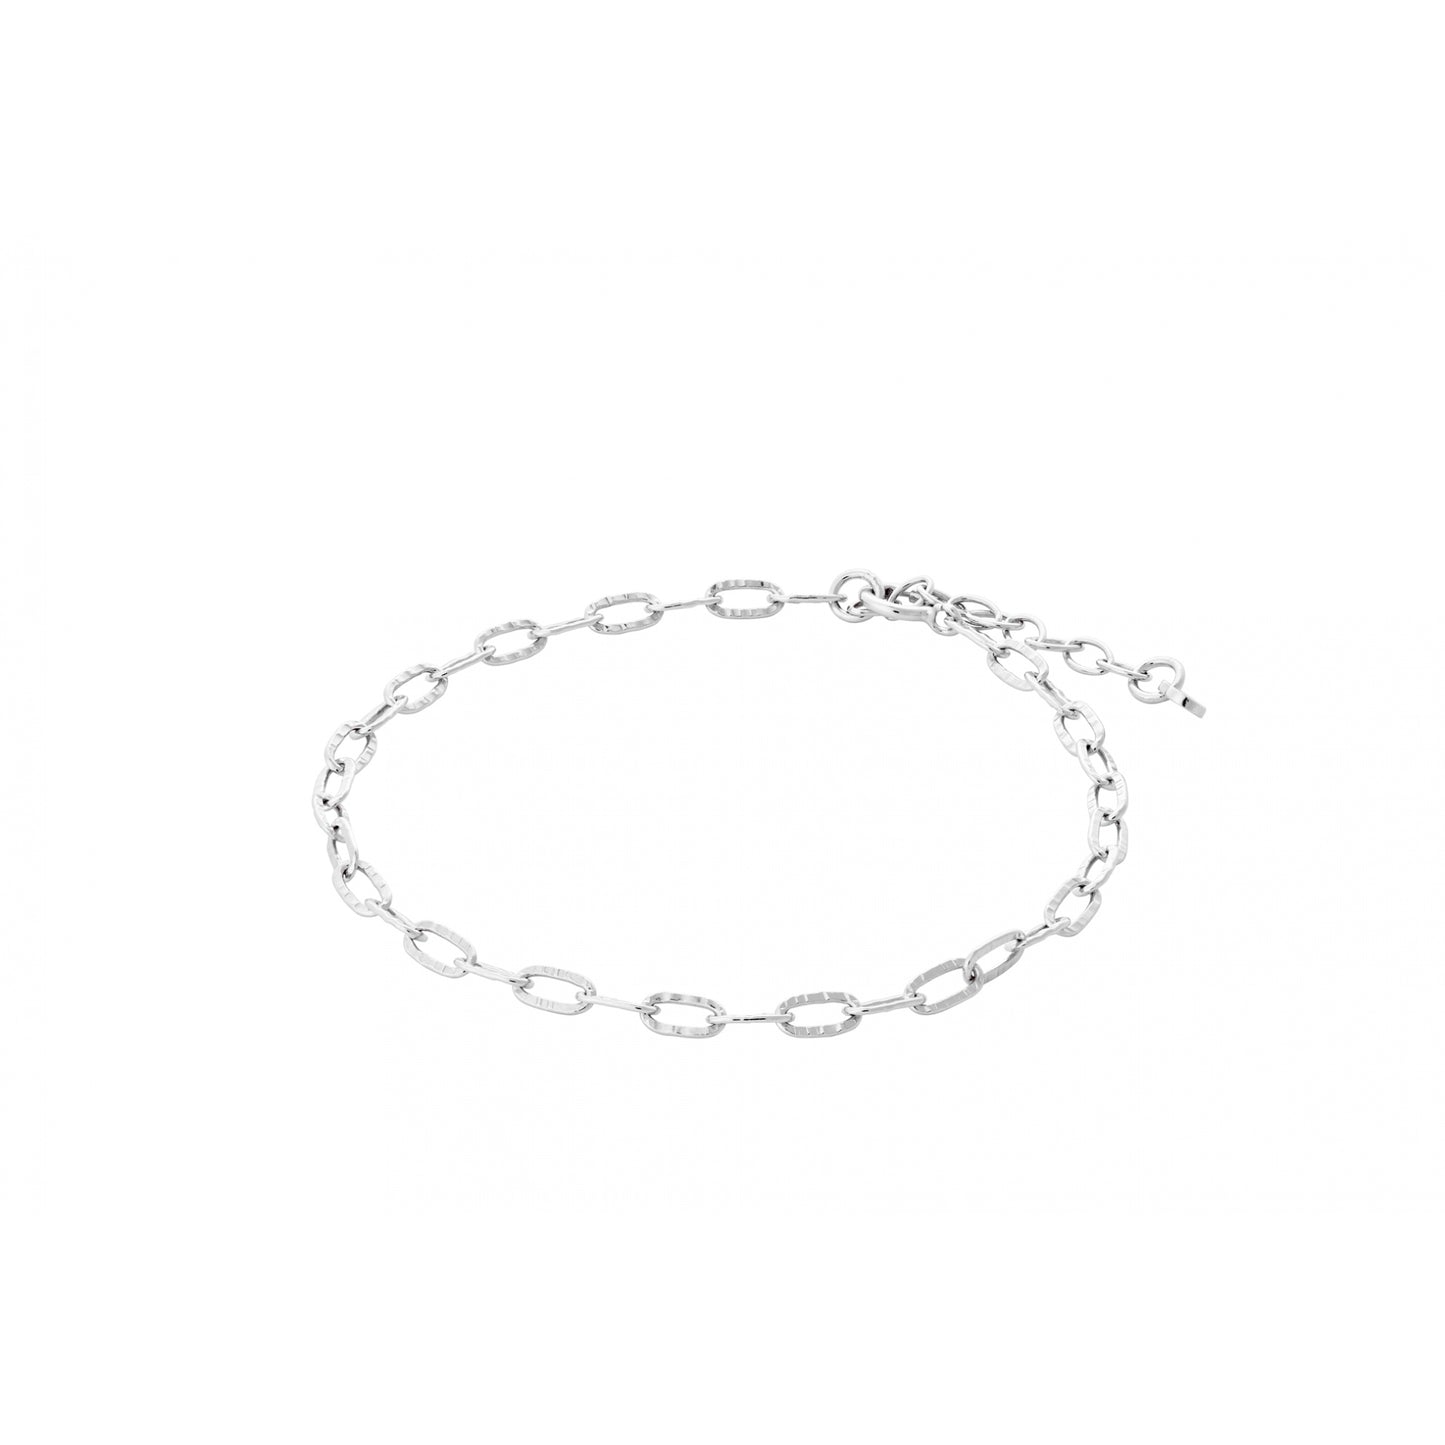 Alba bracelet silver